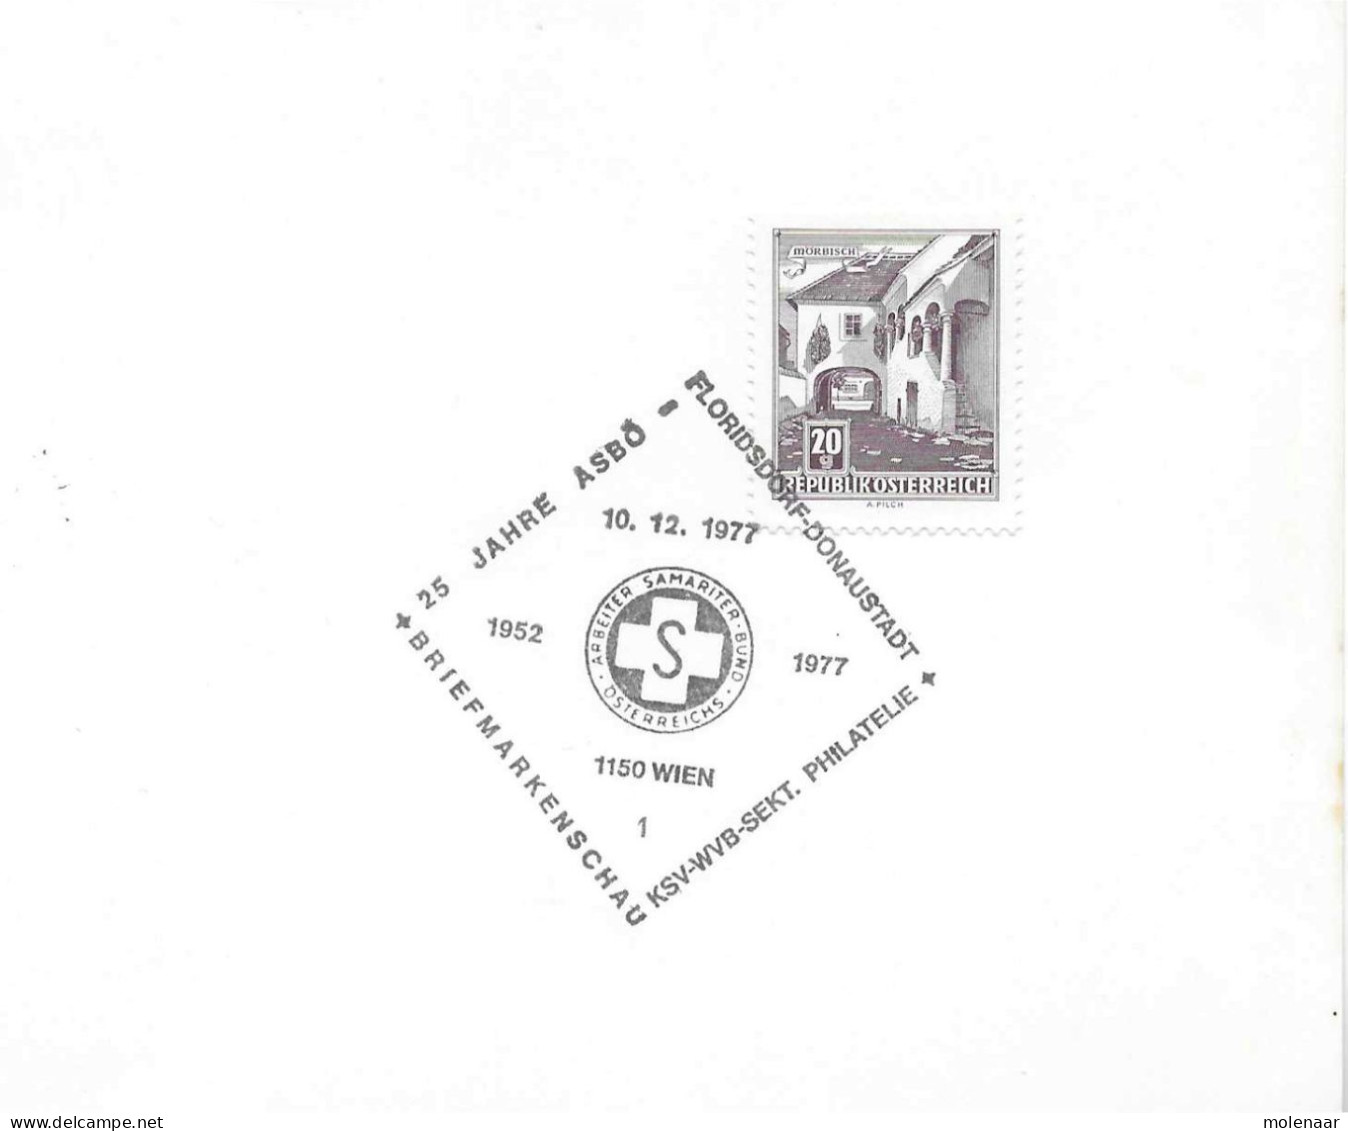 Postzegels > Europa > Oostenrijk >  Republiek > 1971-1900 > Kaart Uit 1977  Met 1 Postzegel (17767) - Storia Postale